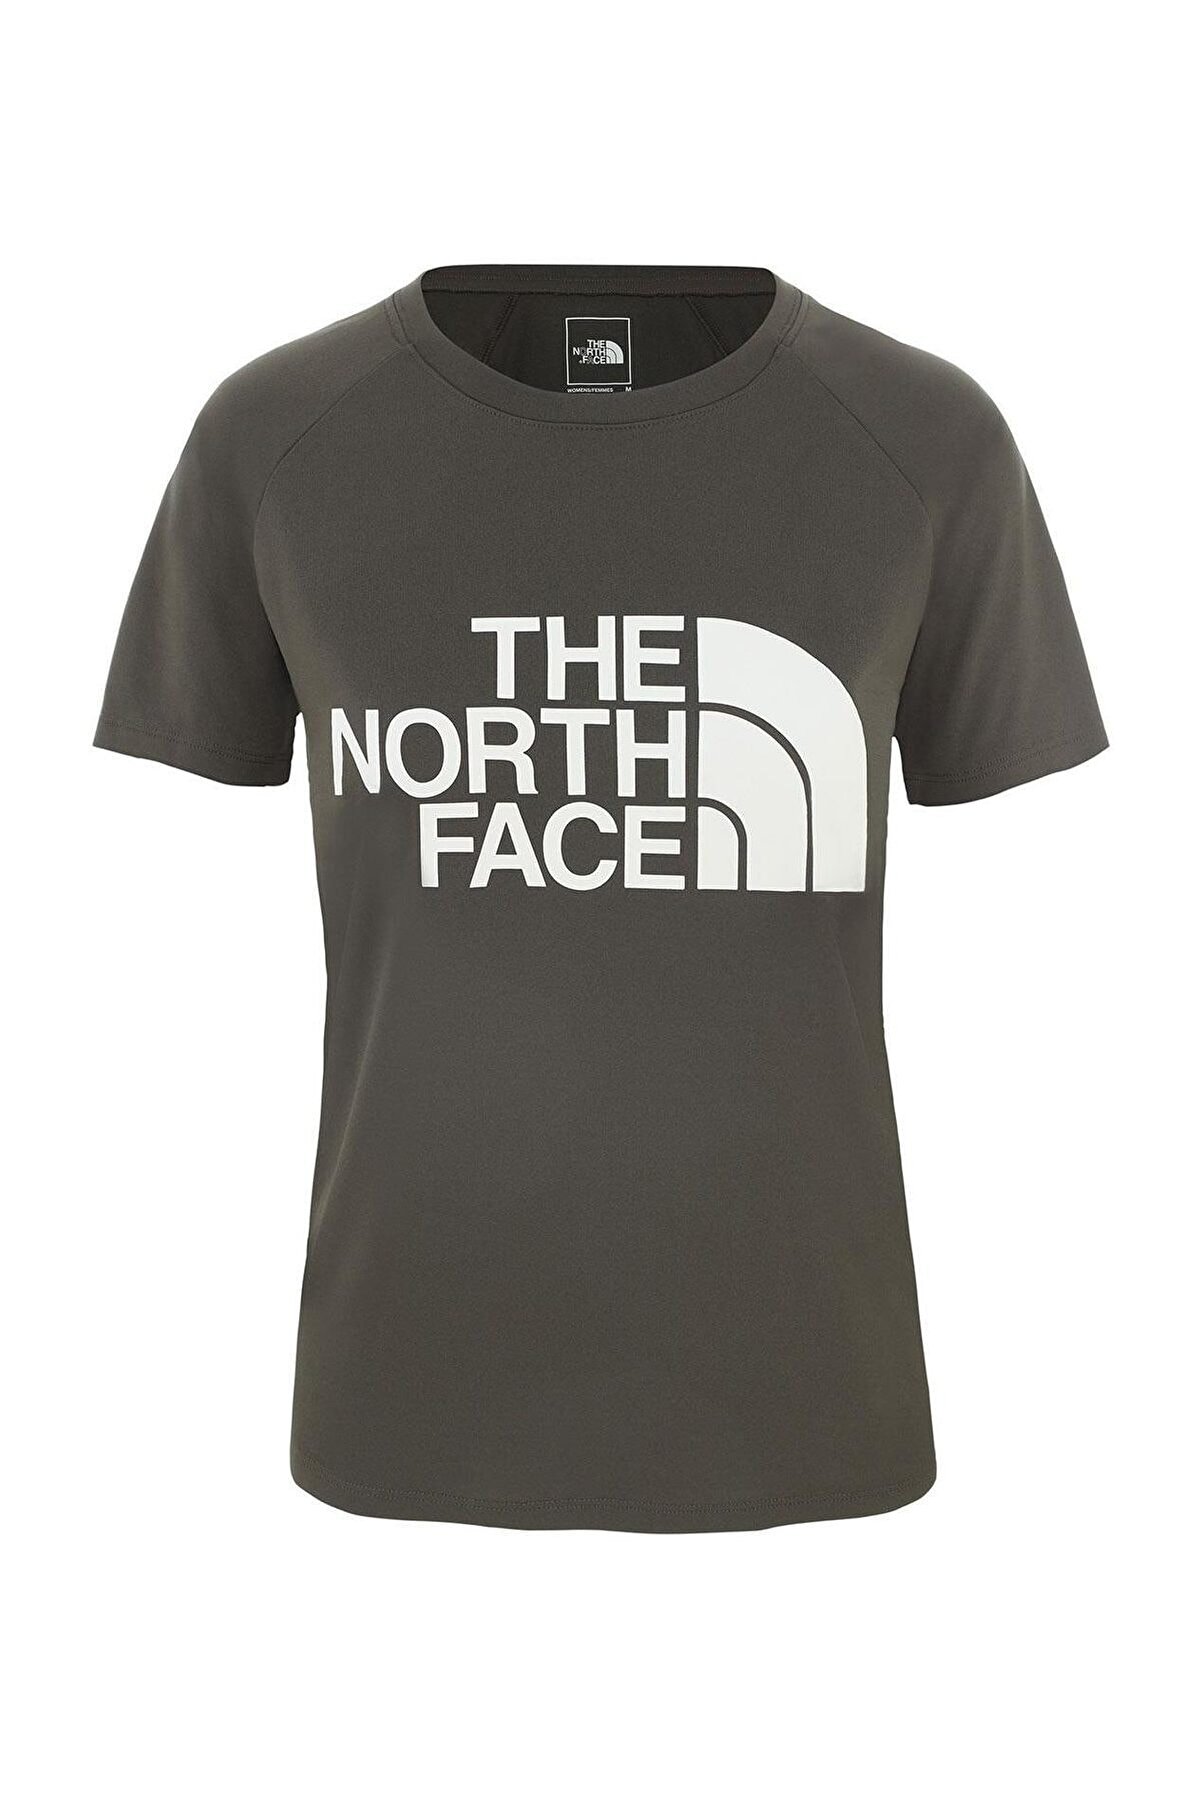 The North Face The Northface Kadın GRAPHIC PLAY HARD S/S-EU  TişörtNF0A3YHK21L1